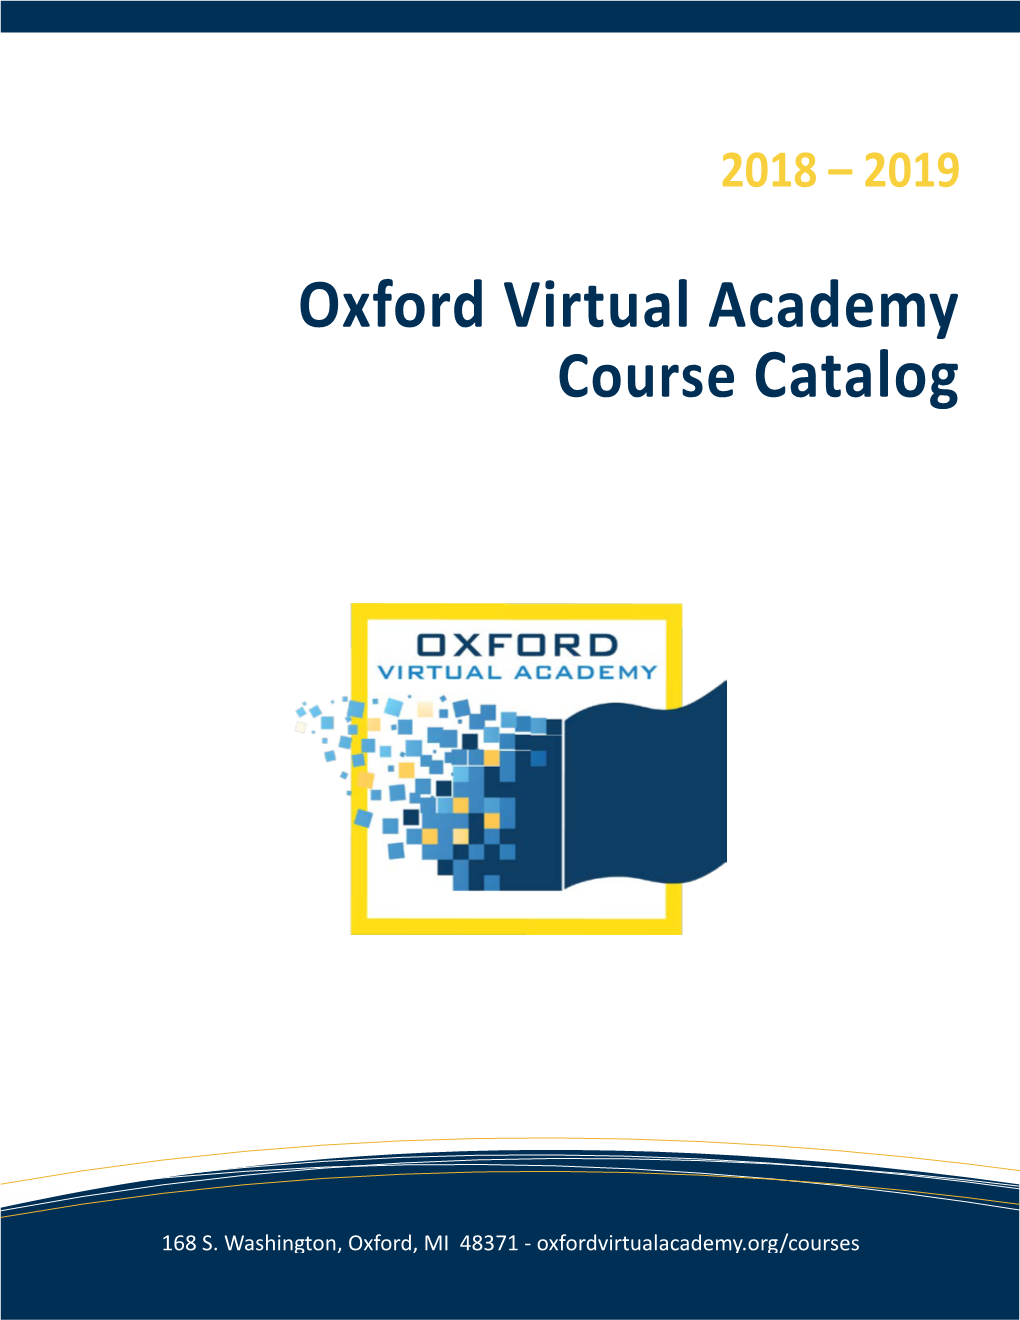 Oxford Virtual Academy Course Catalog